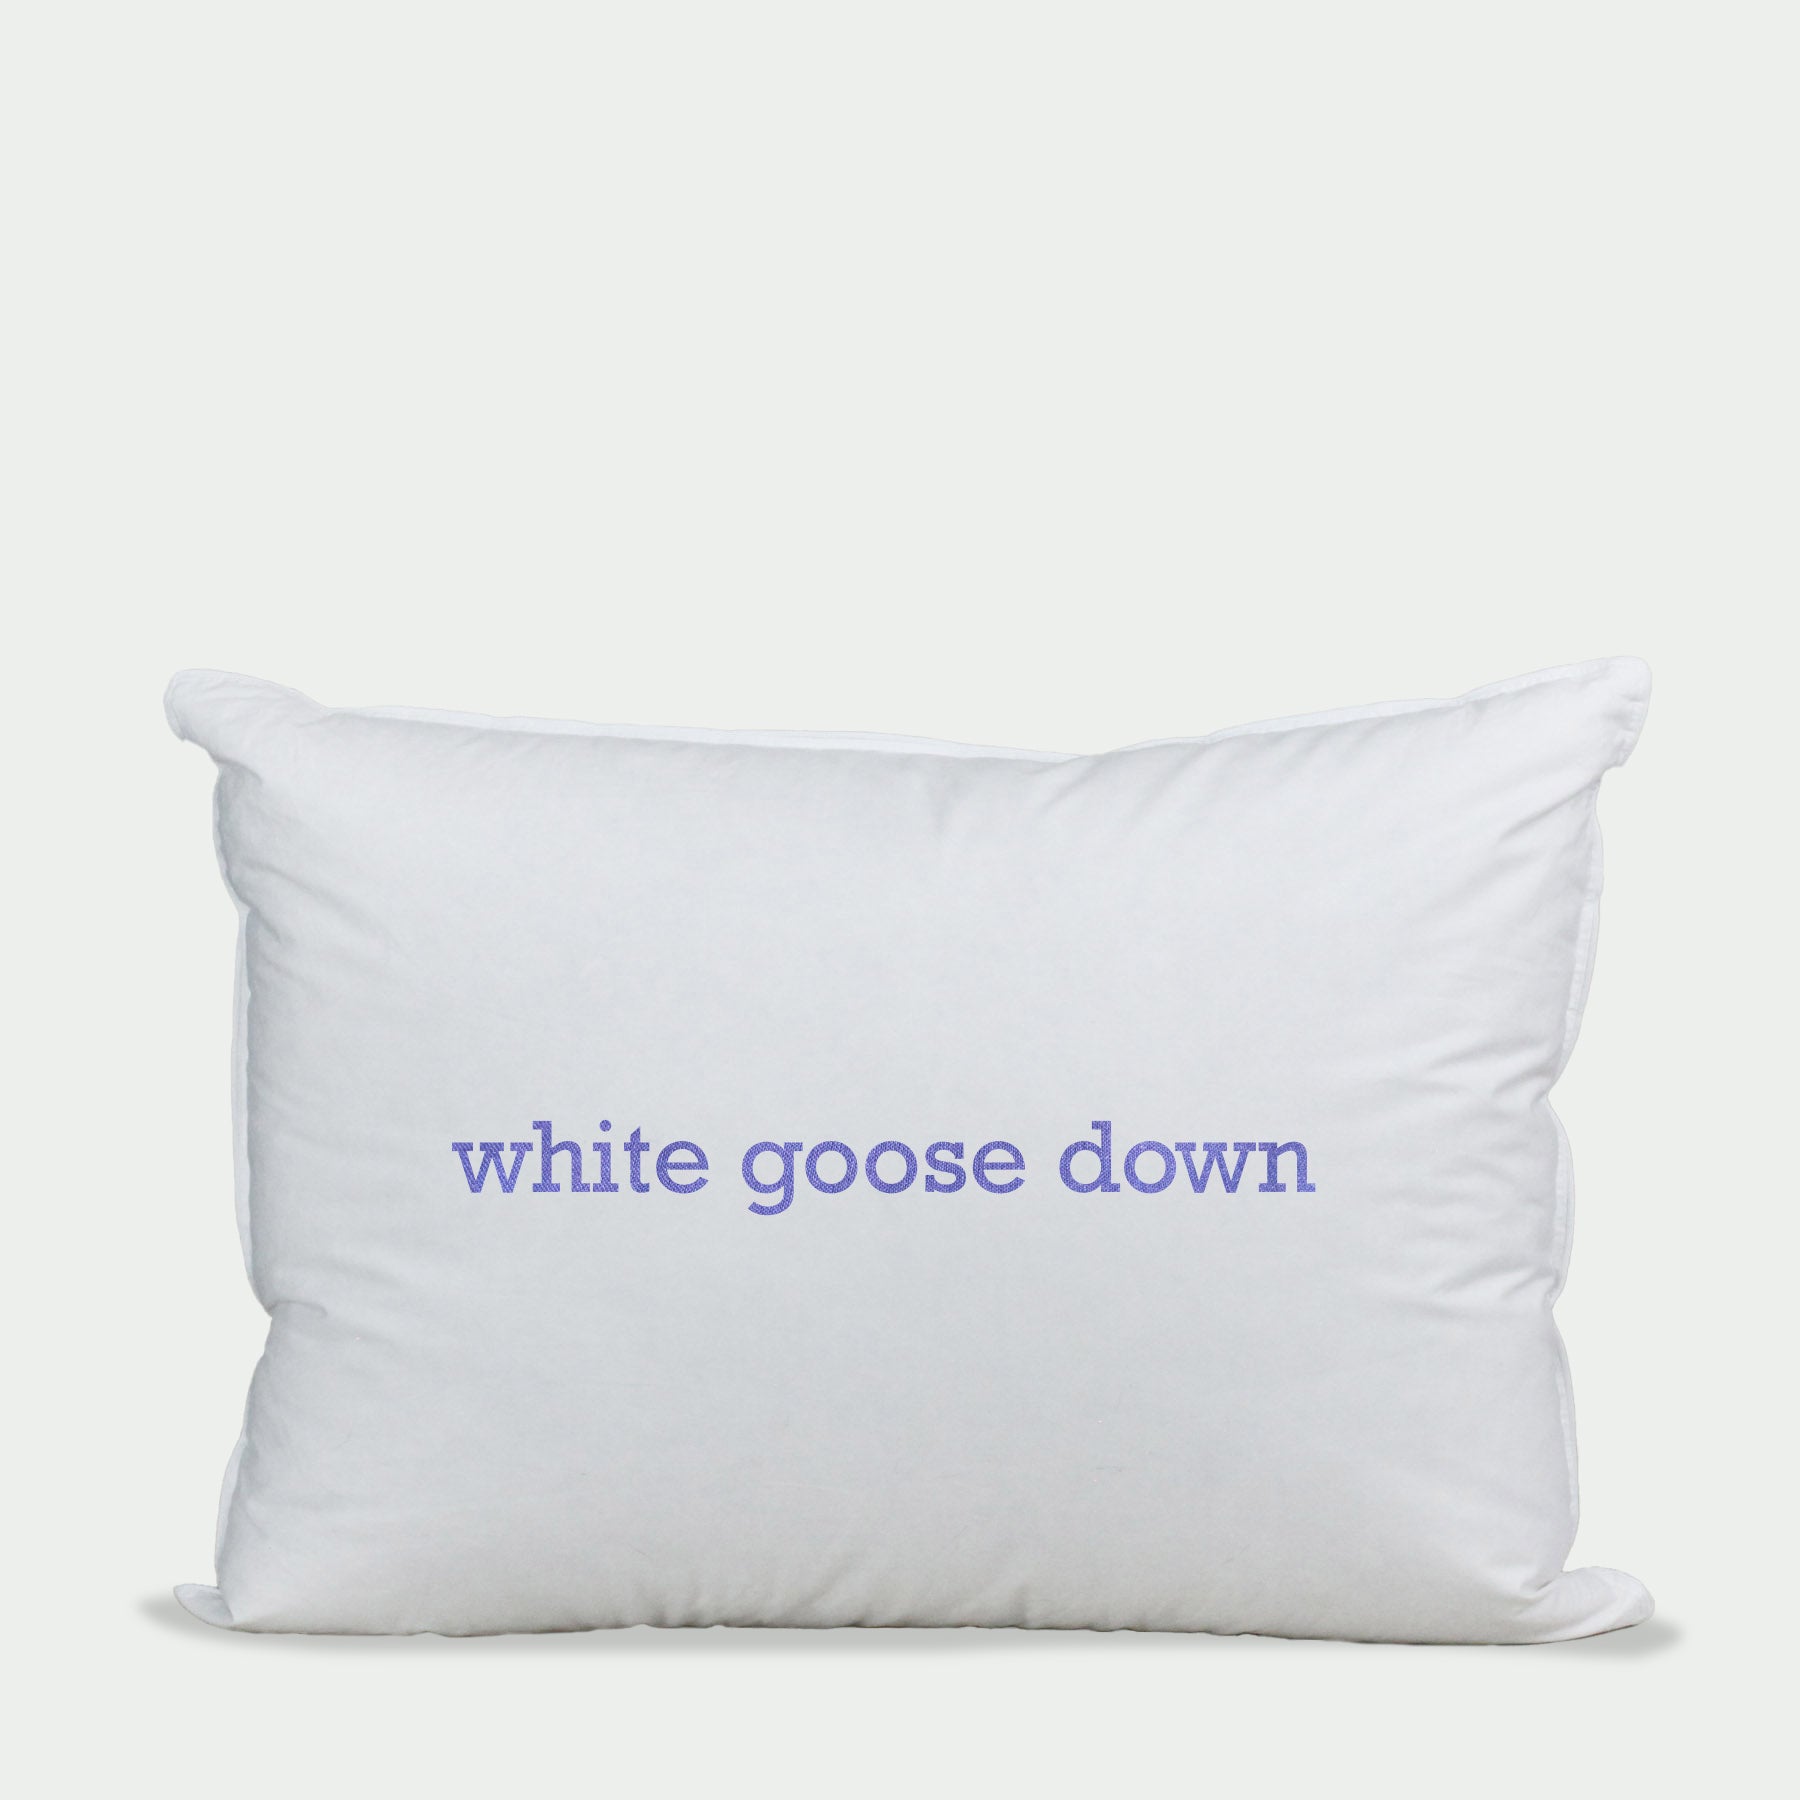 All White Goose Down Pillow